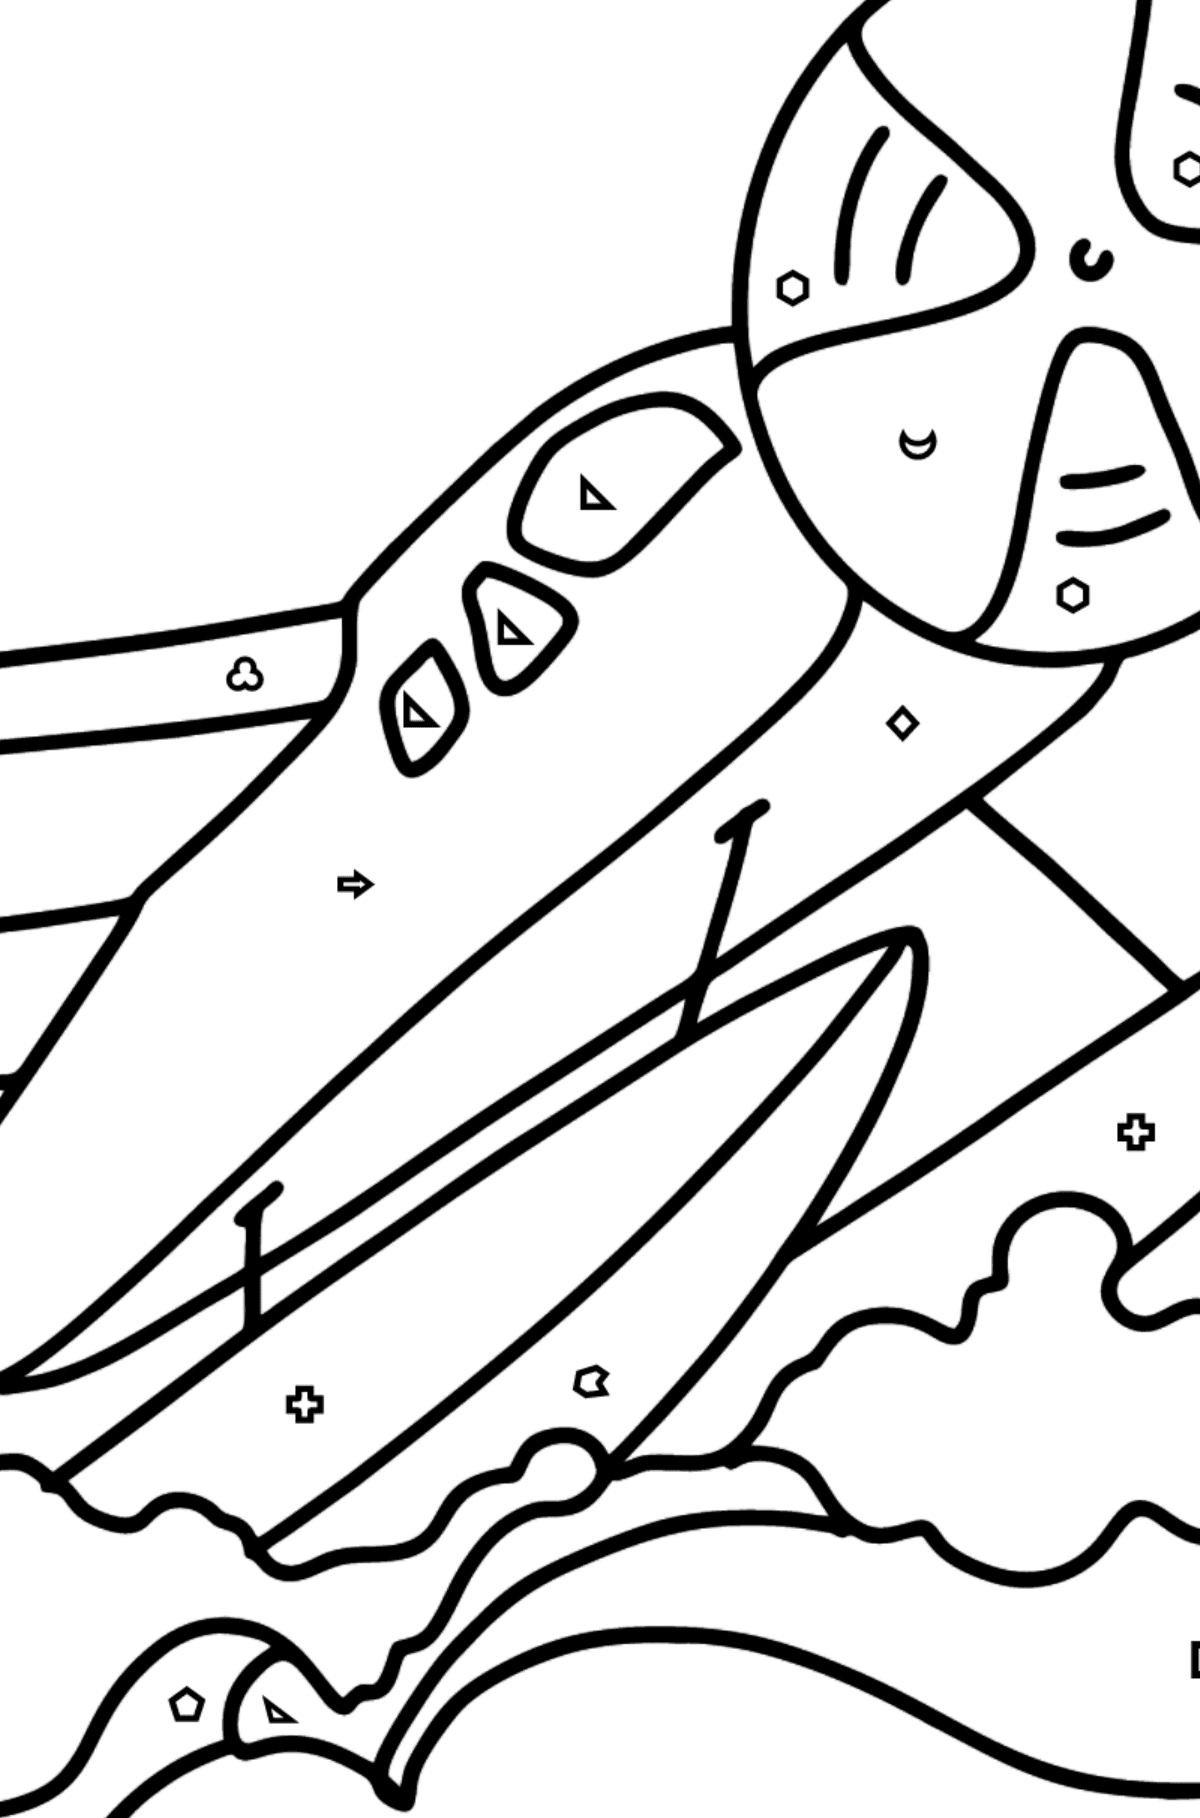 Dibujo de Avión anfibio para colorear - Colorear por Formas Geométricas para Niños